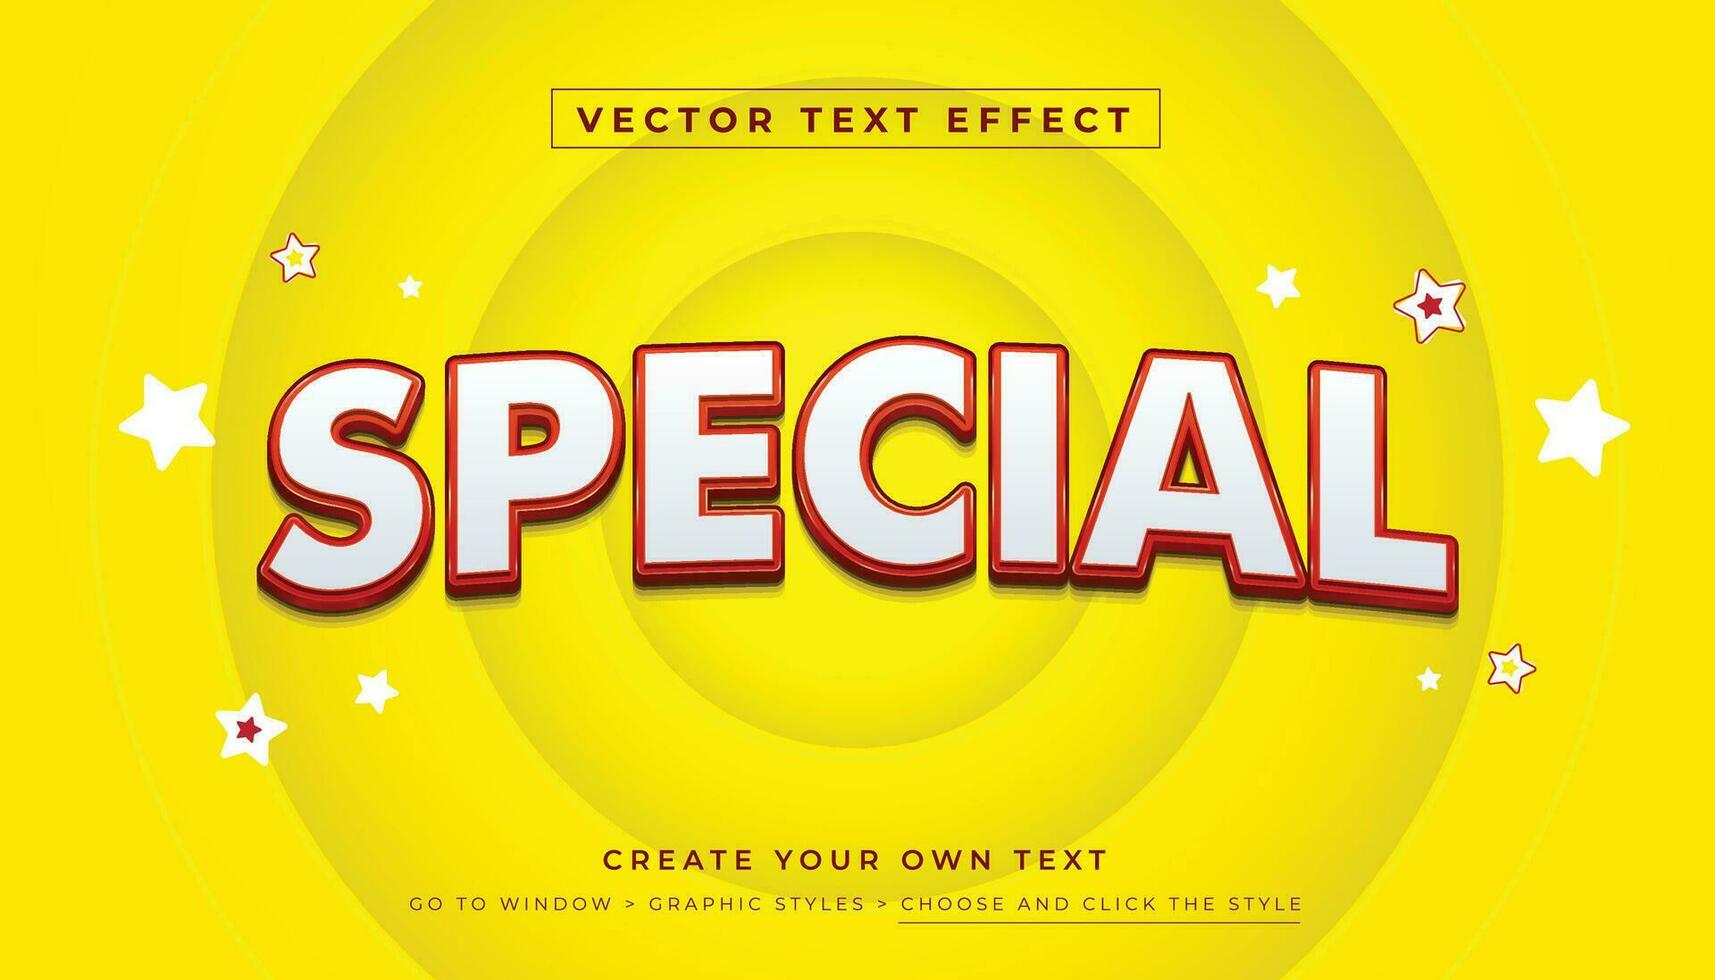 Vektor editierbar 3d rot Weiß Text Wirkung. Besondere Rabatt Grafik Stil auf abstrakt Gelb Hintergrund